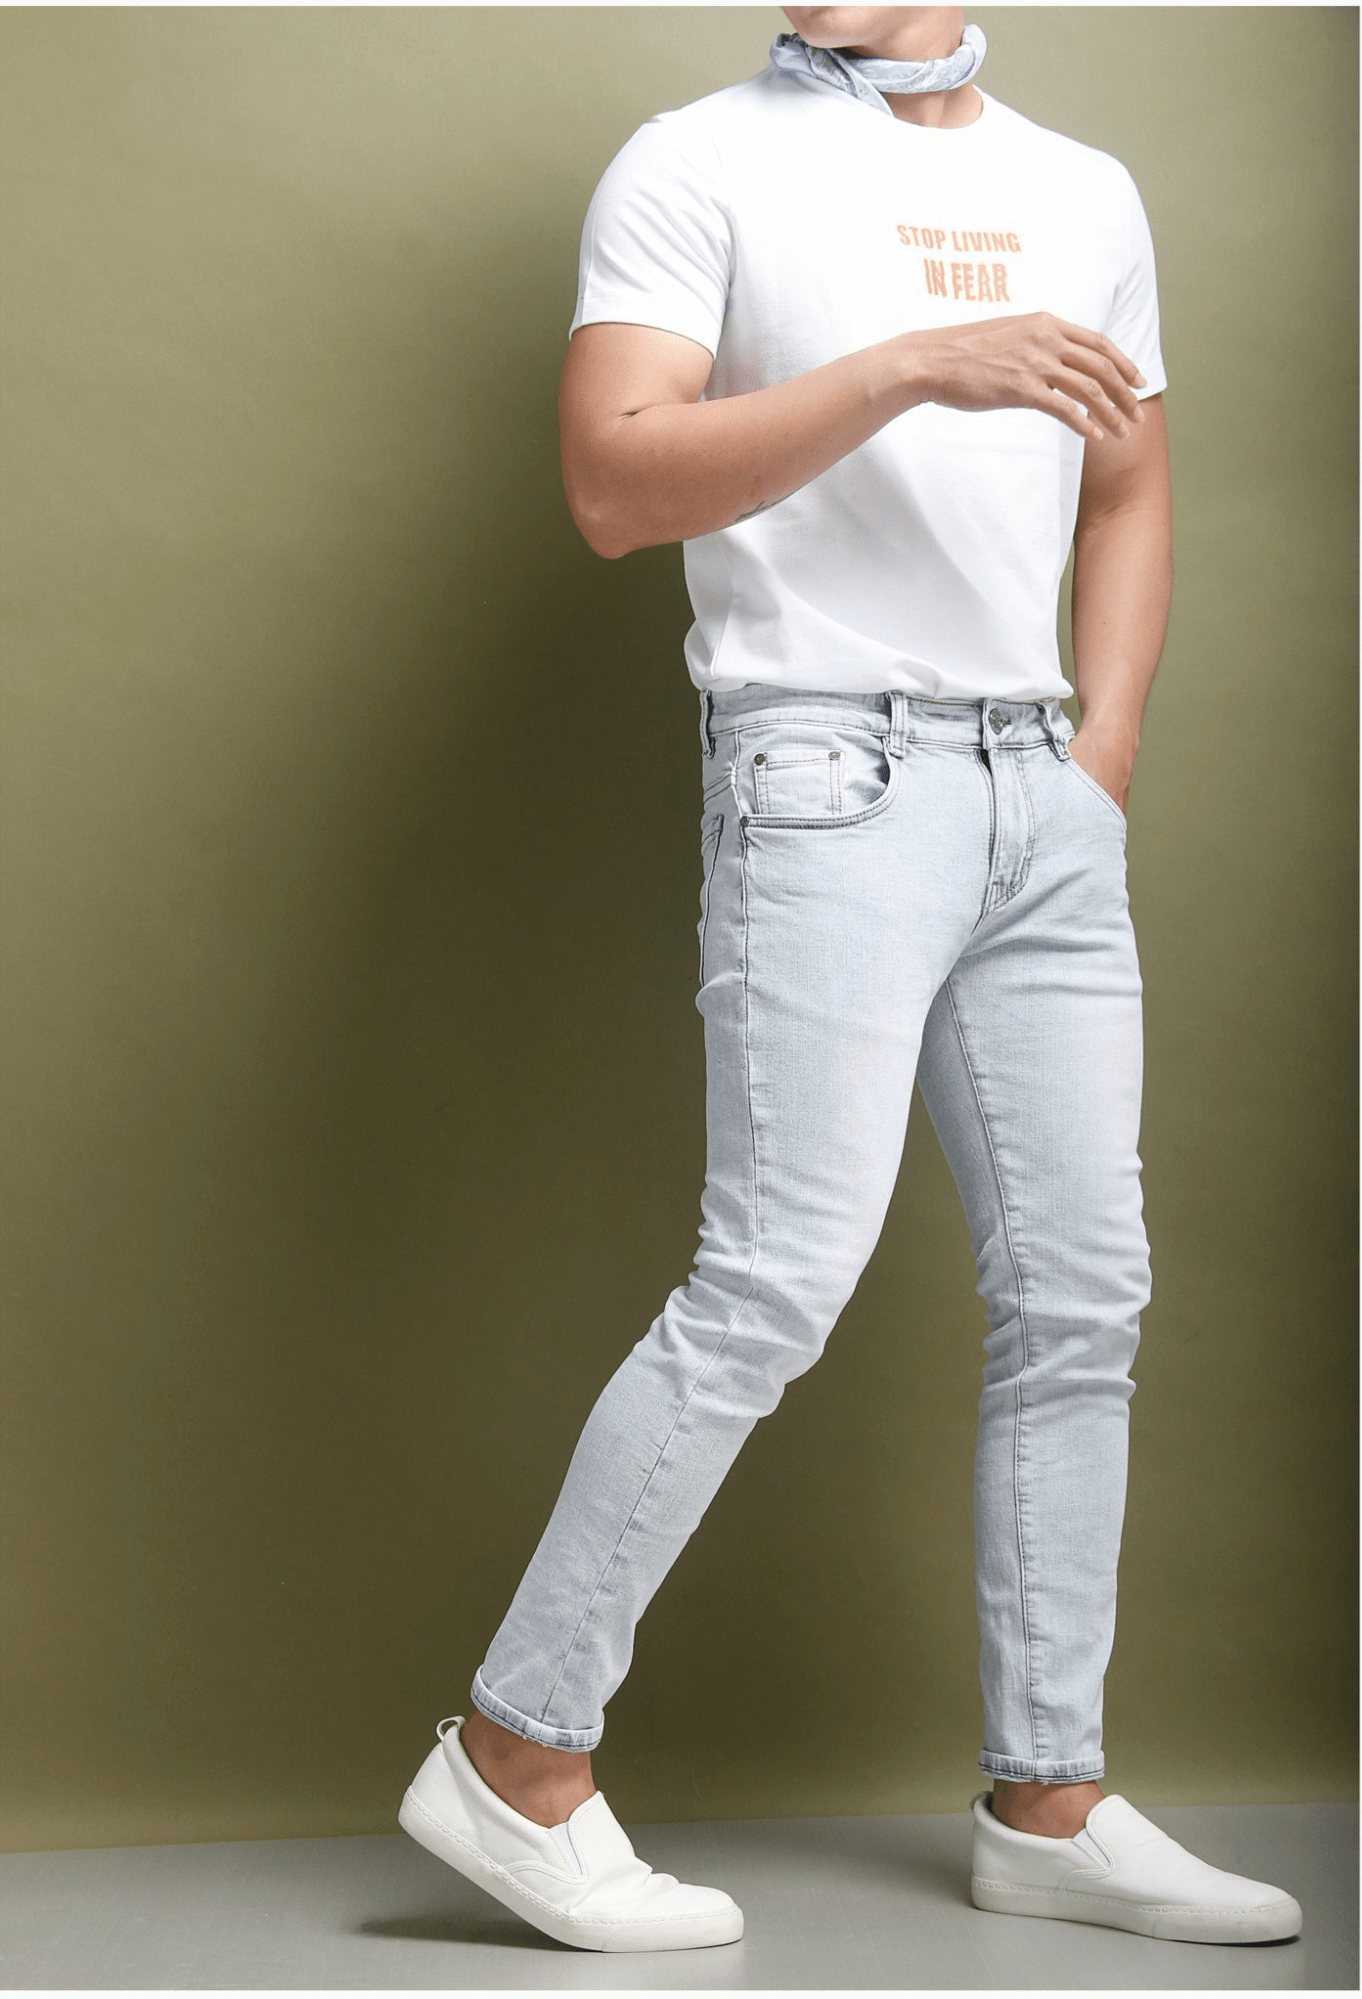 Sự phối hợp áo thun trắng với quần jeans